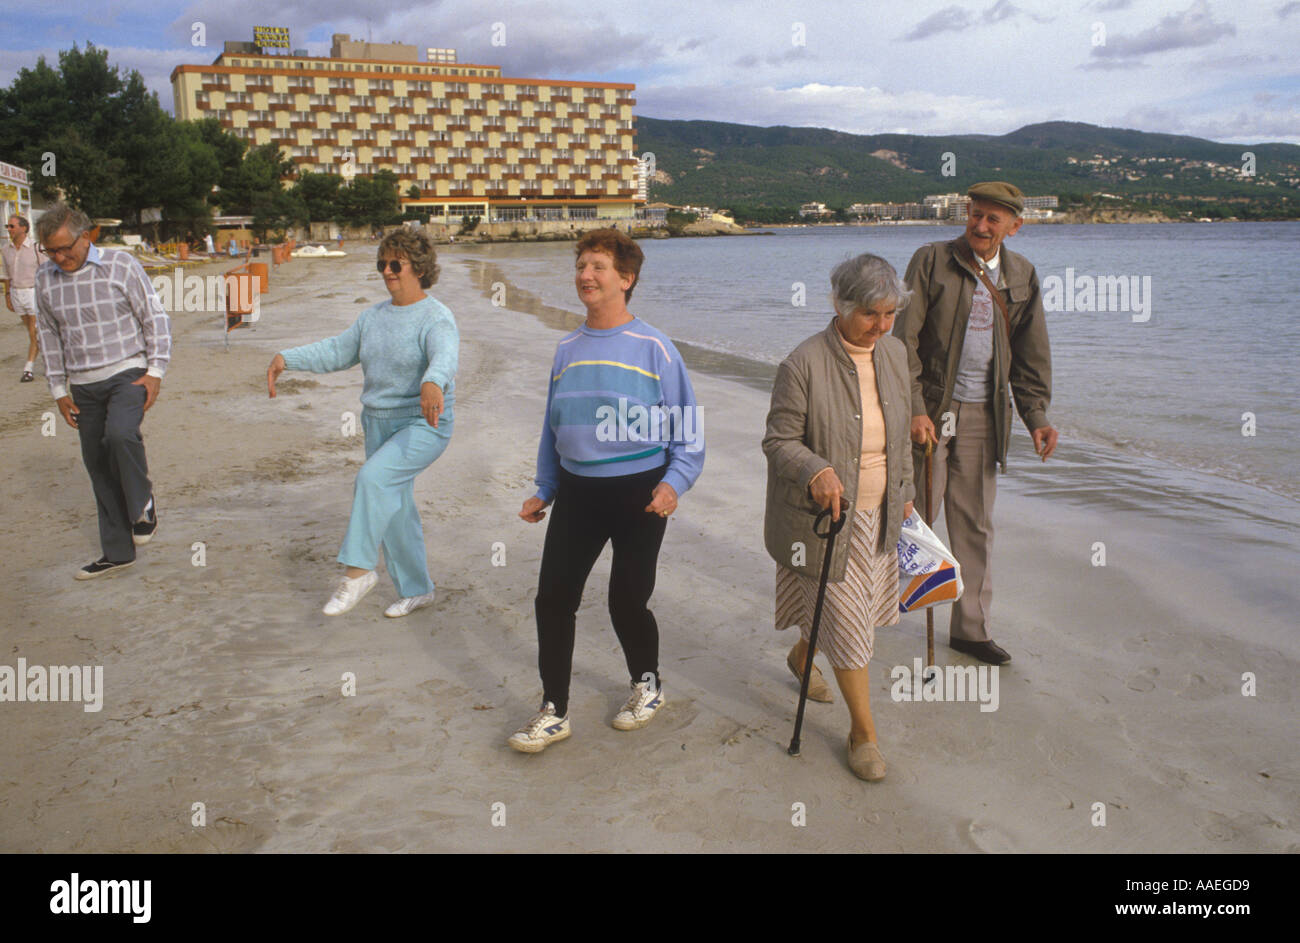 Les retraités anglais en vacances îles Baléares Palma Nova Majorque Espagne Jeune de Cœur vacances d'hiver dans le soleil espagnol HOMER SYKES Banque D'Images